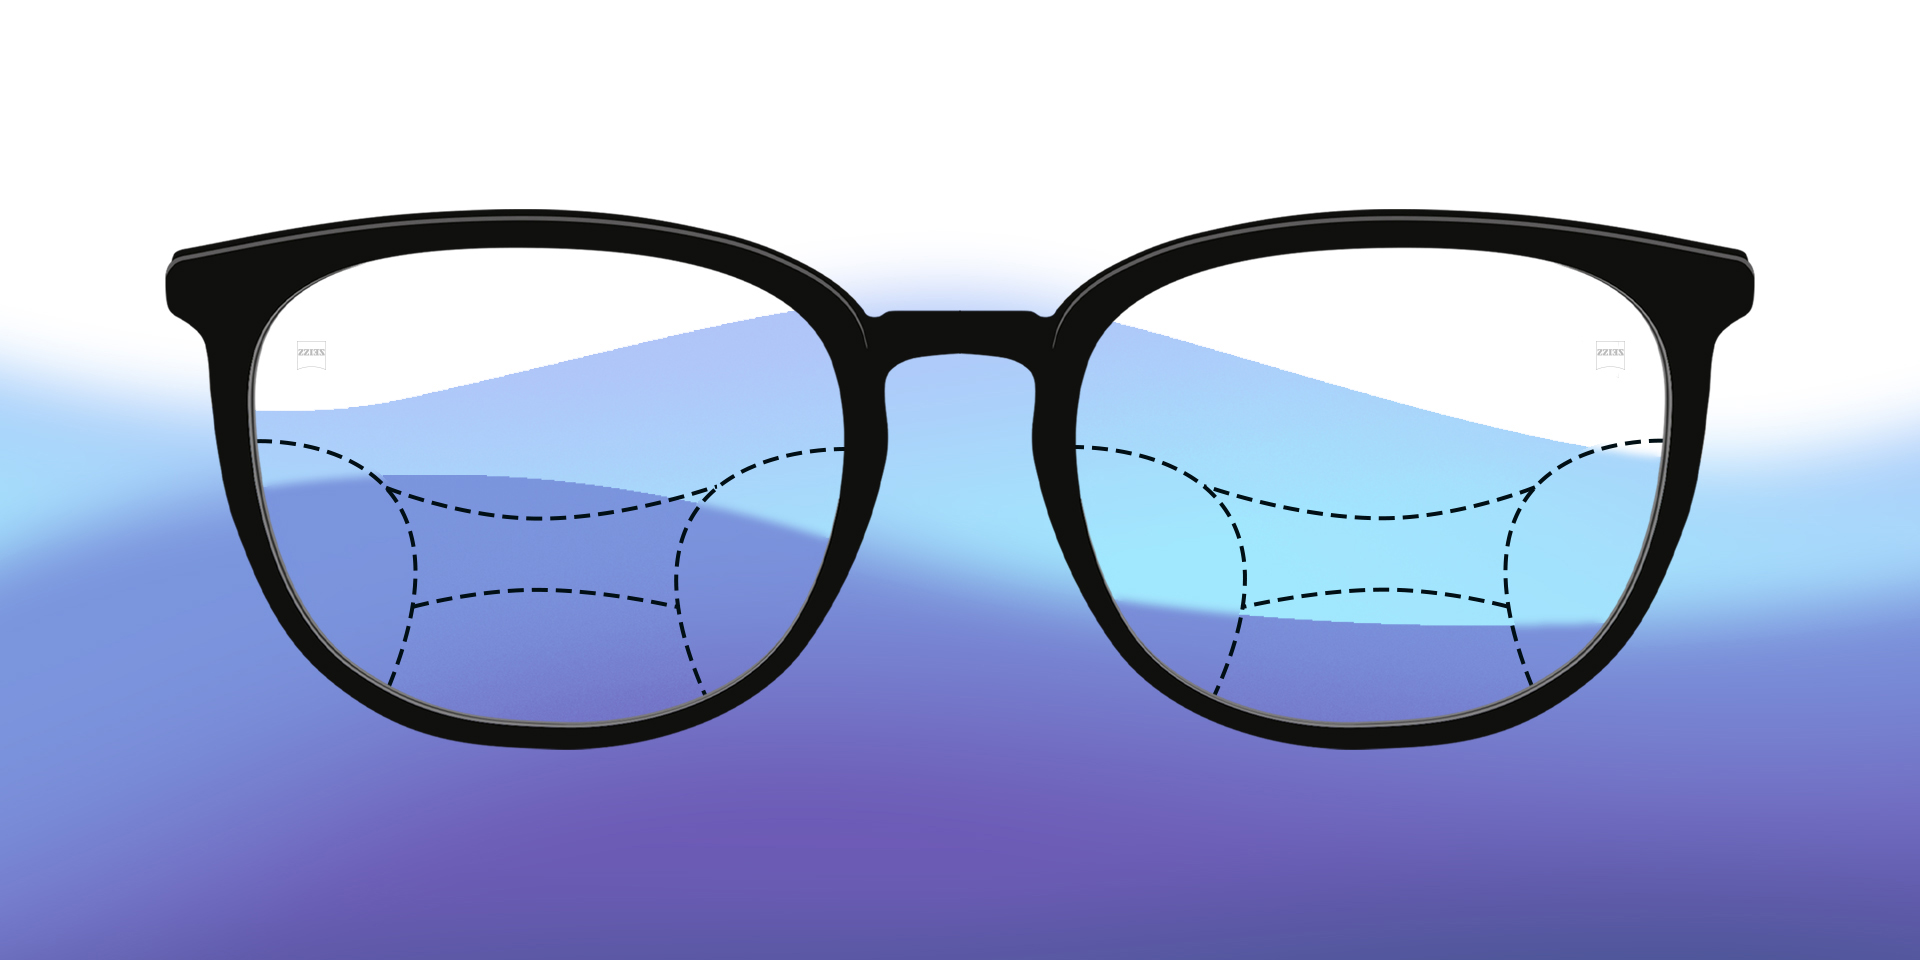 Una imagen de lentes progresivas ilustradas sobre un fondo colorido.